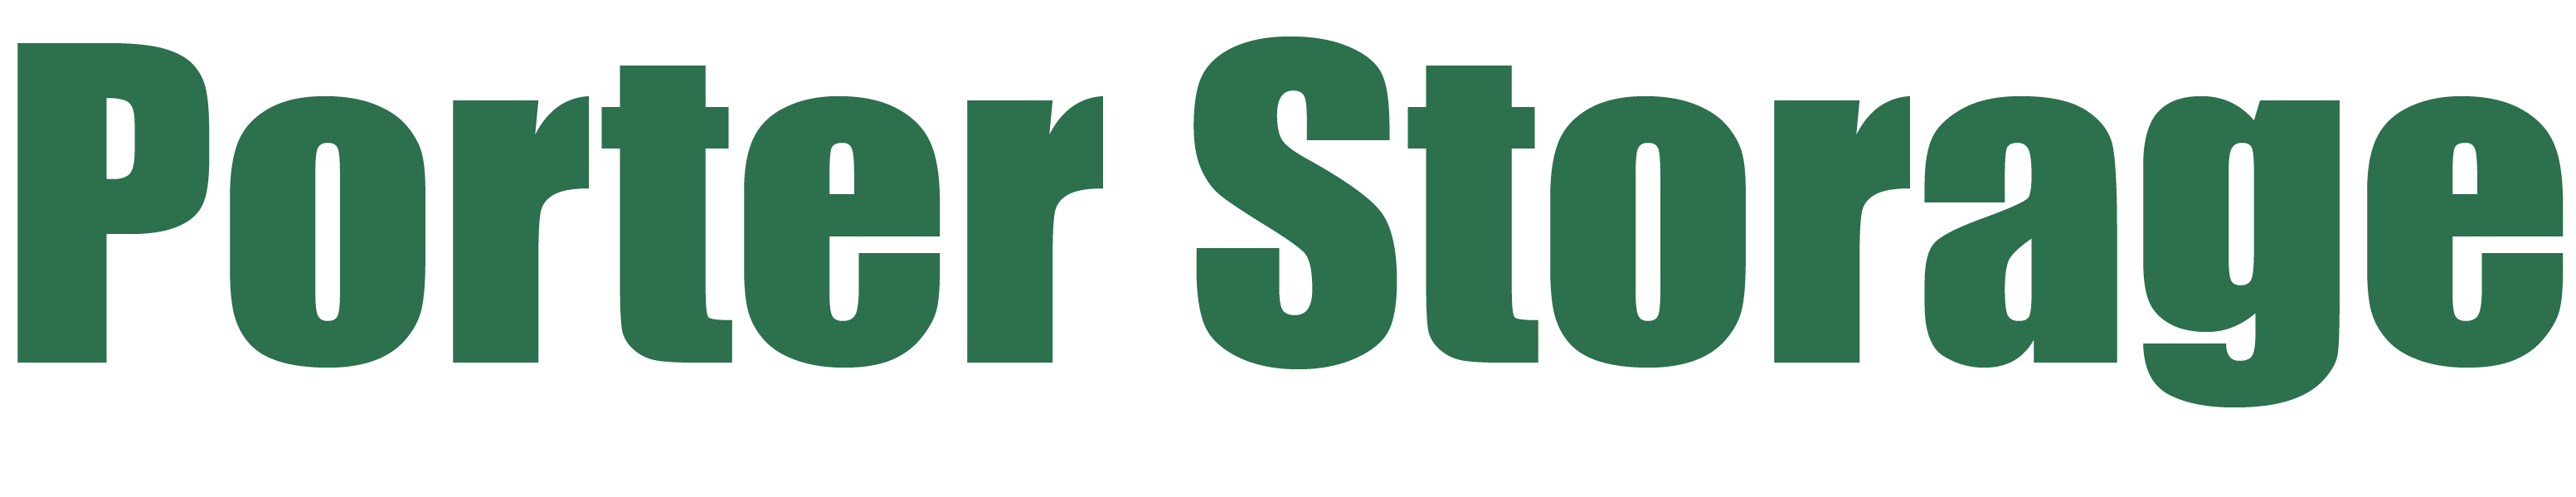 Porter Storage Logo